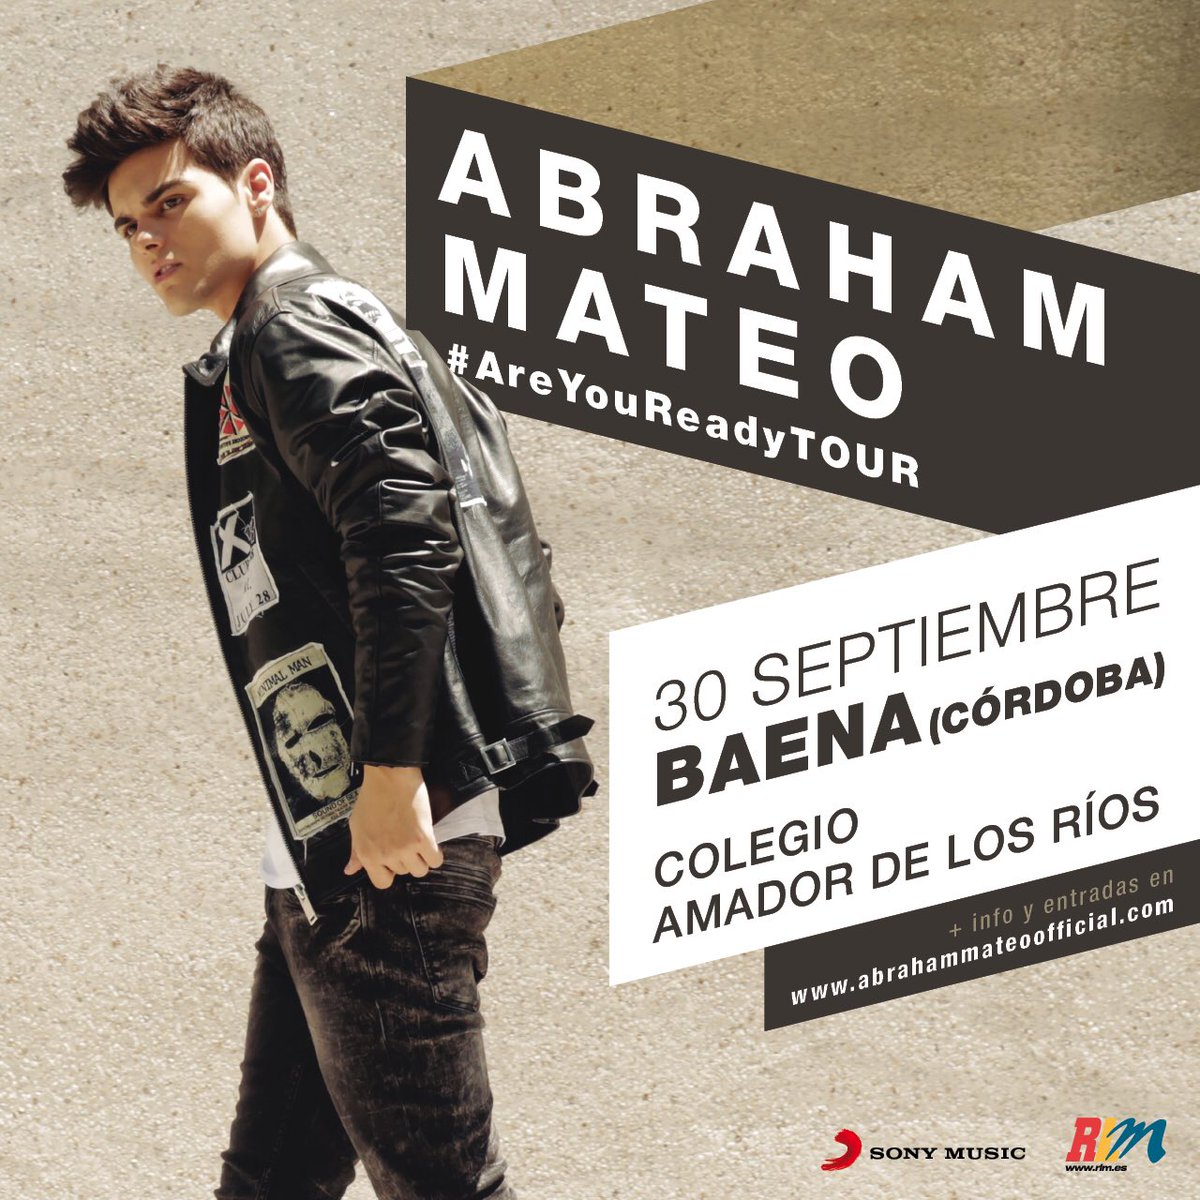 Concierto de Abraham Mateo en Baena, Córdoba, España, Viernes, 30 de septiembre de 2016